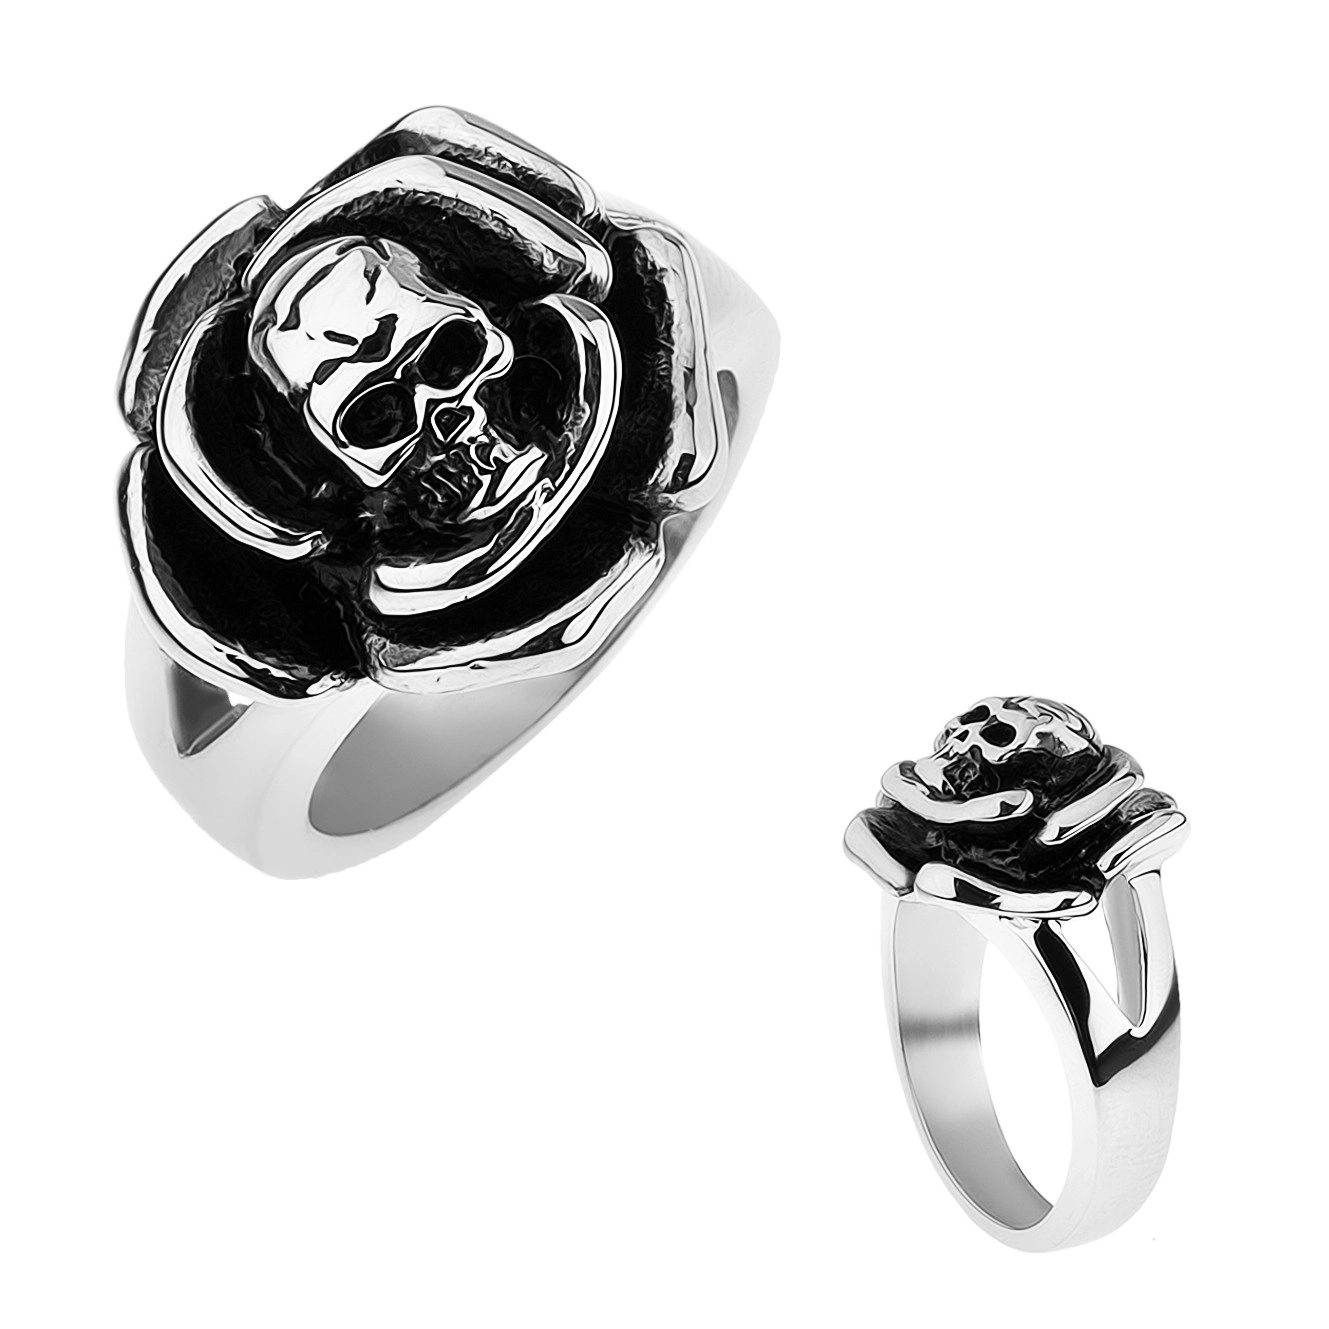 Patinovaný ocelový prsten, růže s lebkou uprostřed, rozdvojená ramena - Velikost: 66